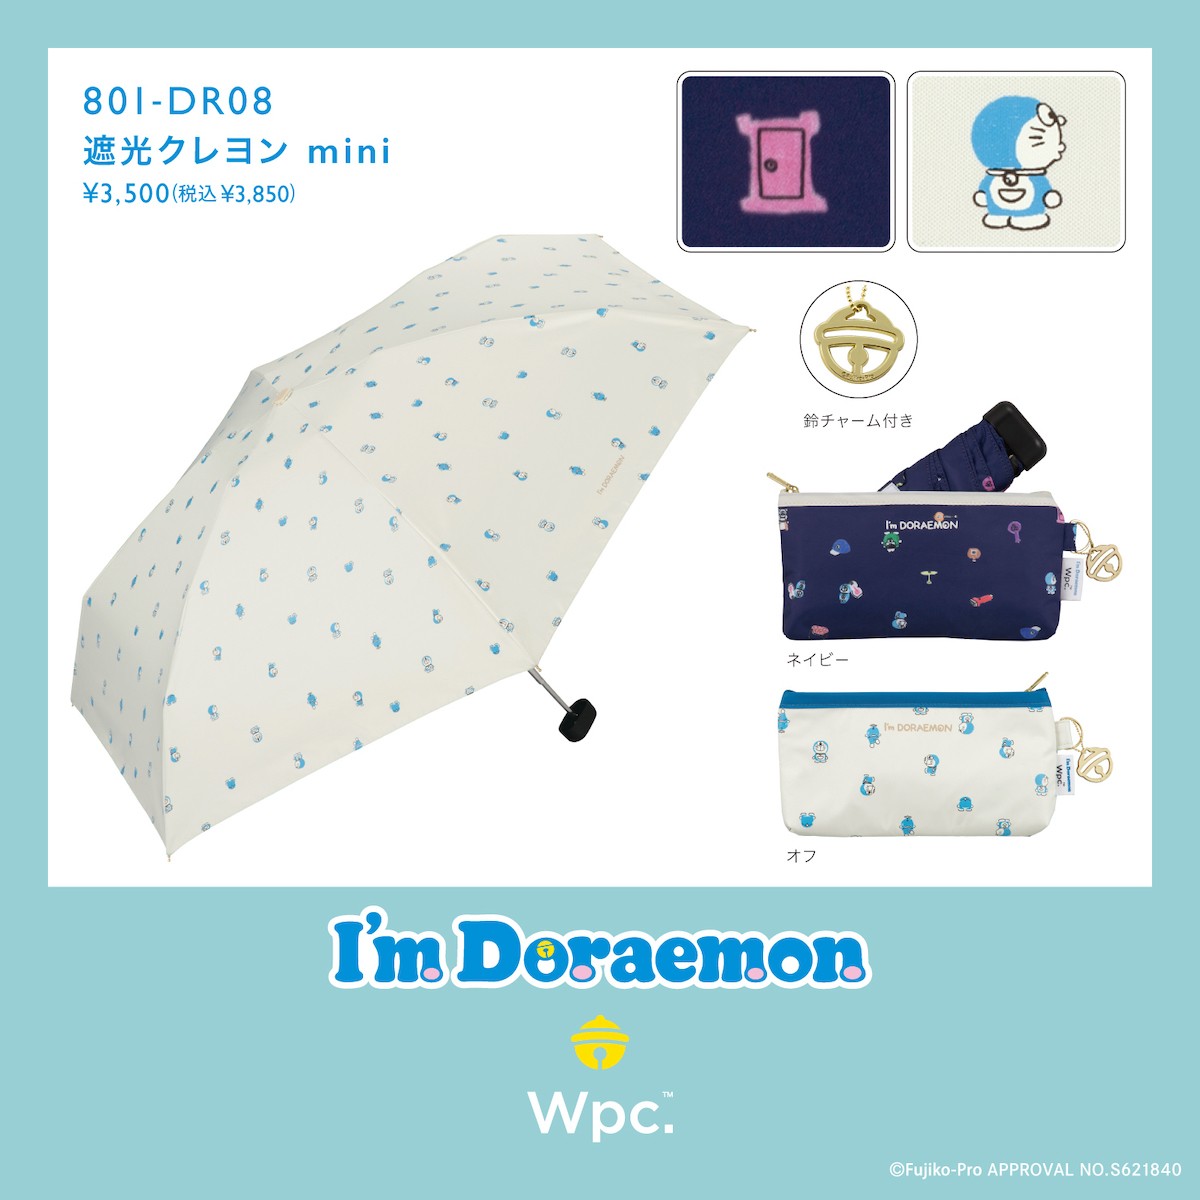 I’m Doraemonの日傘